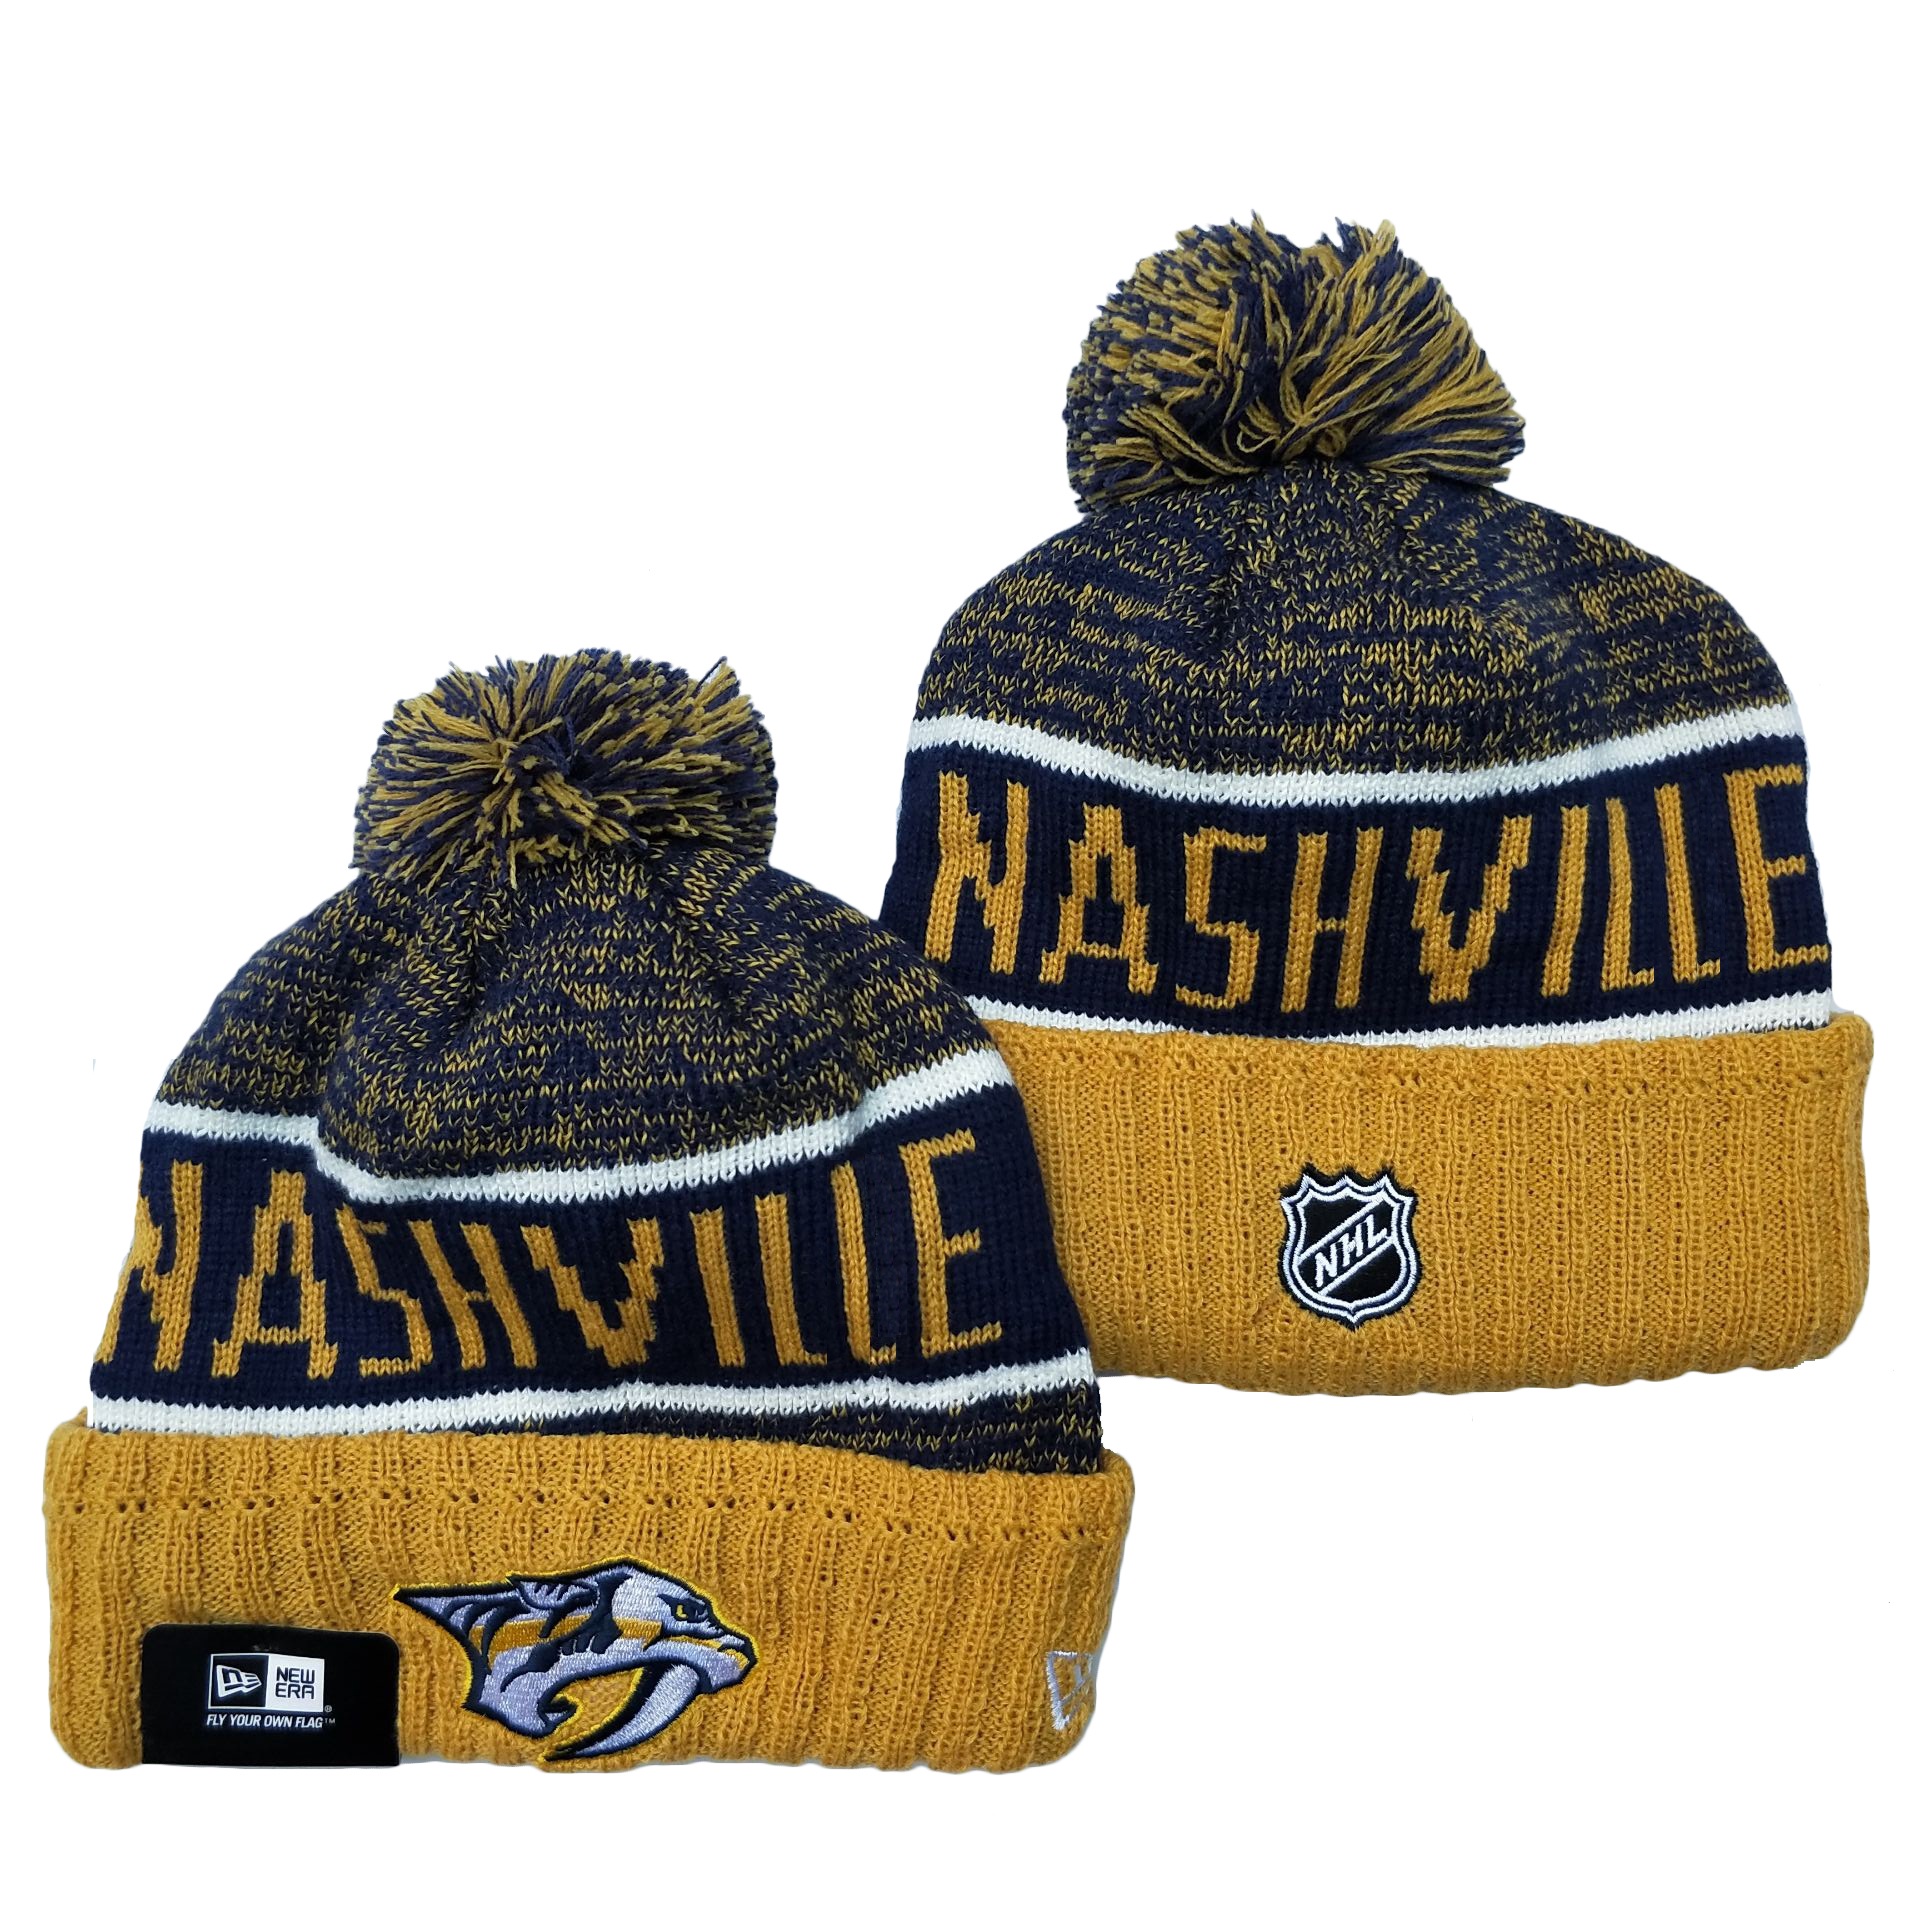 Nashville Predators Knit Hats 001